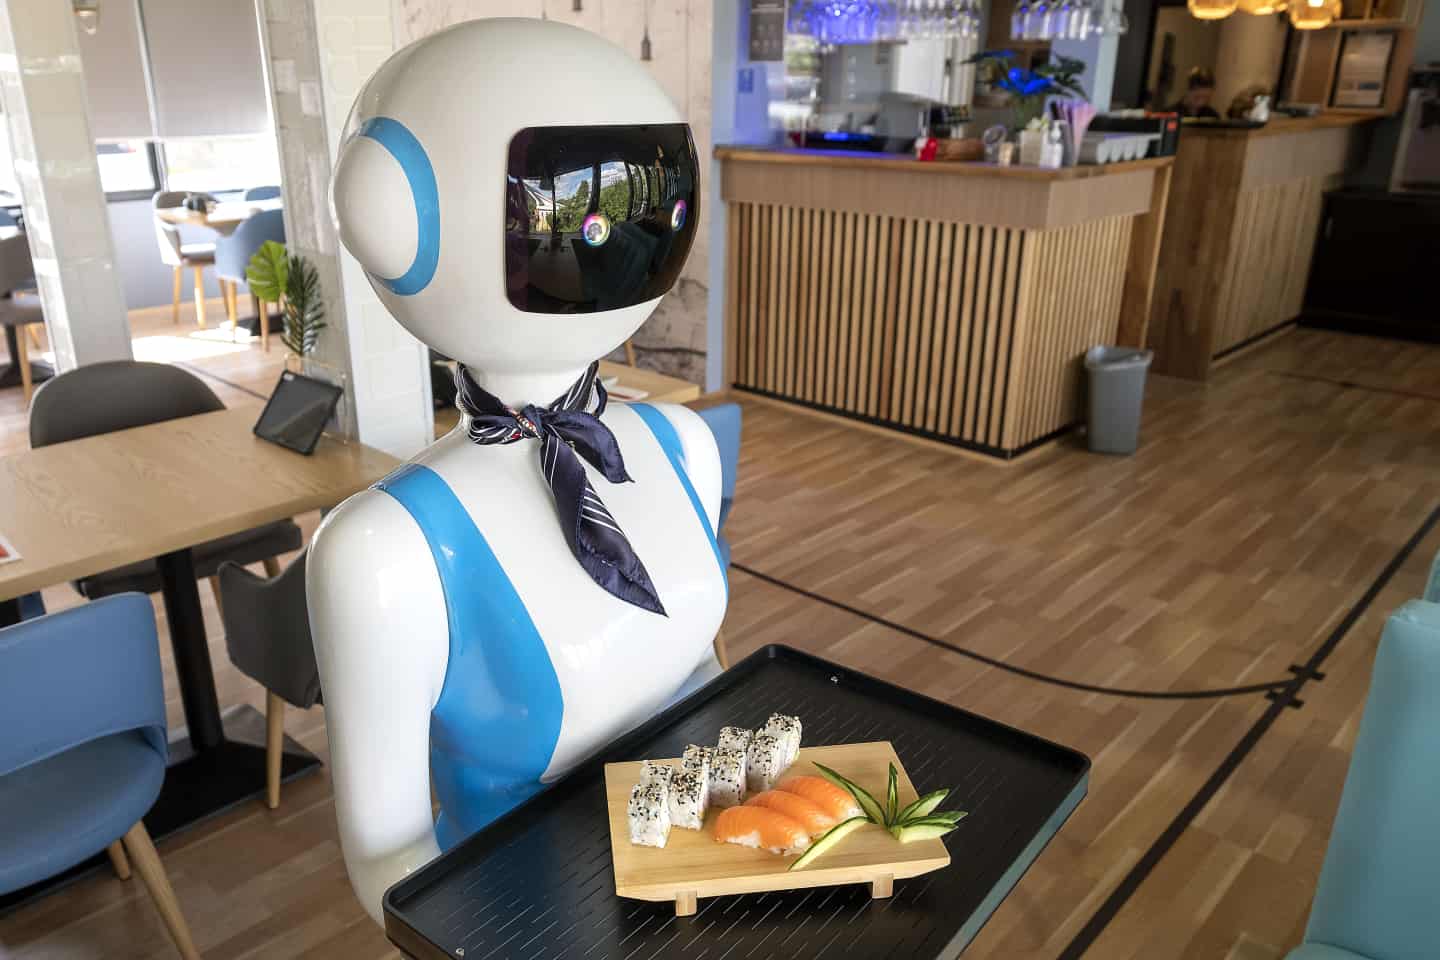 Se video: Kolding-restaurant fået en talende robottjener | jv.dk